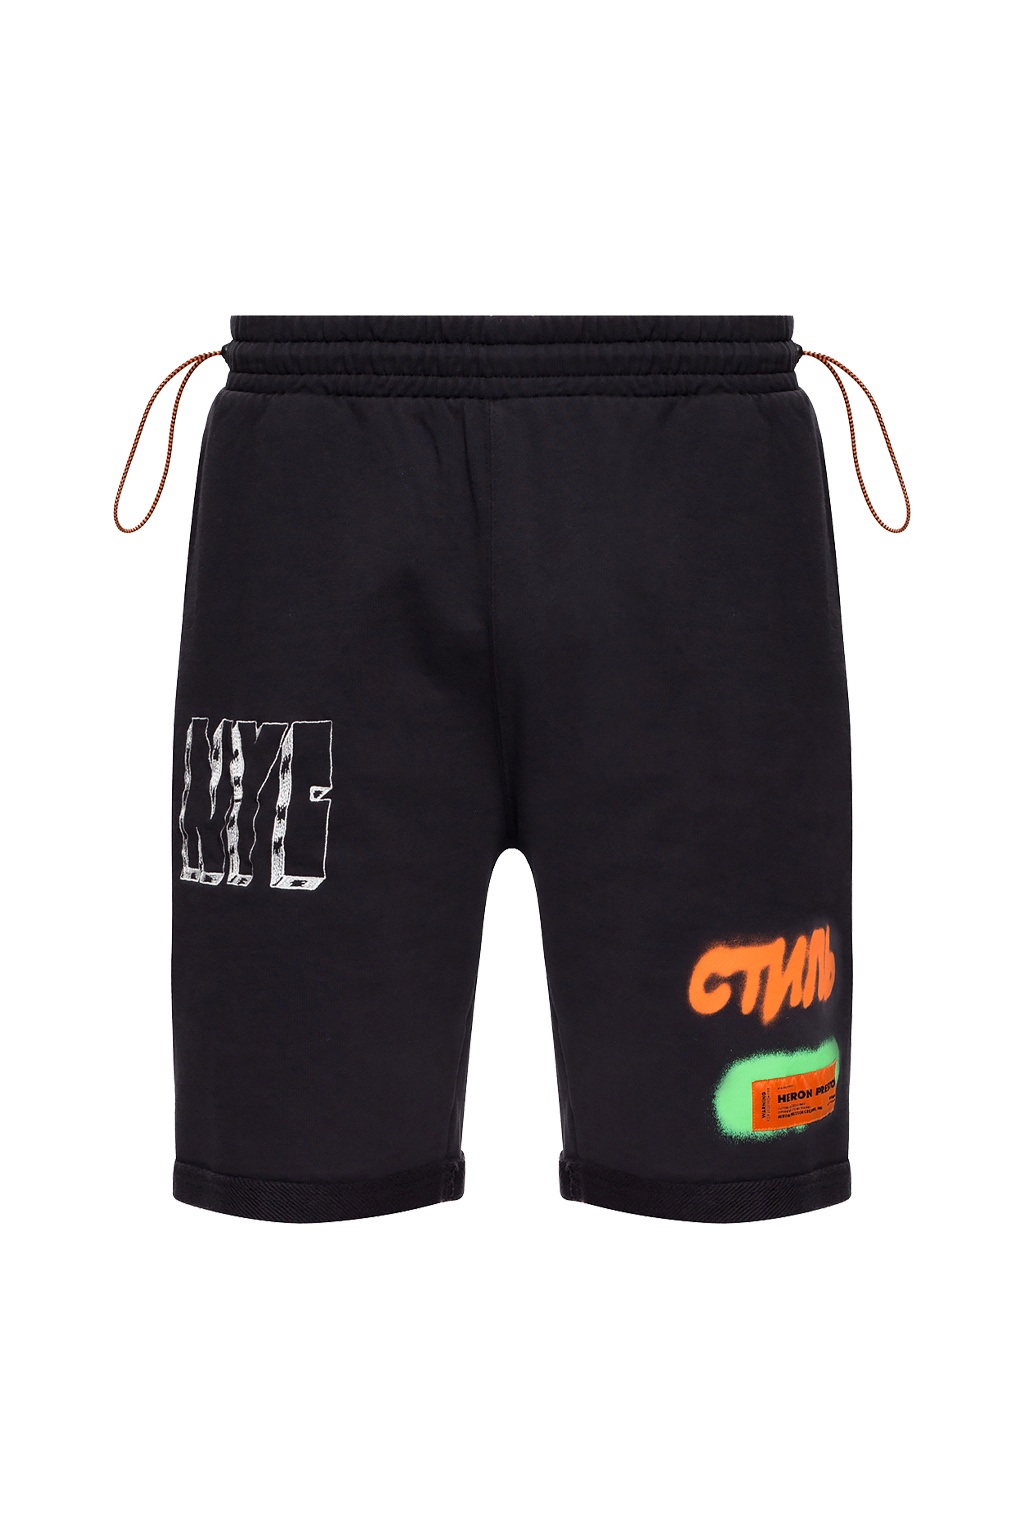 Heron Preston Printed sweat shorts | Men's Clothing | Vitkac